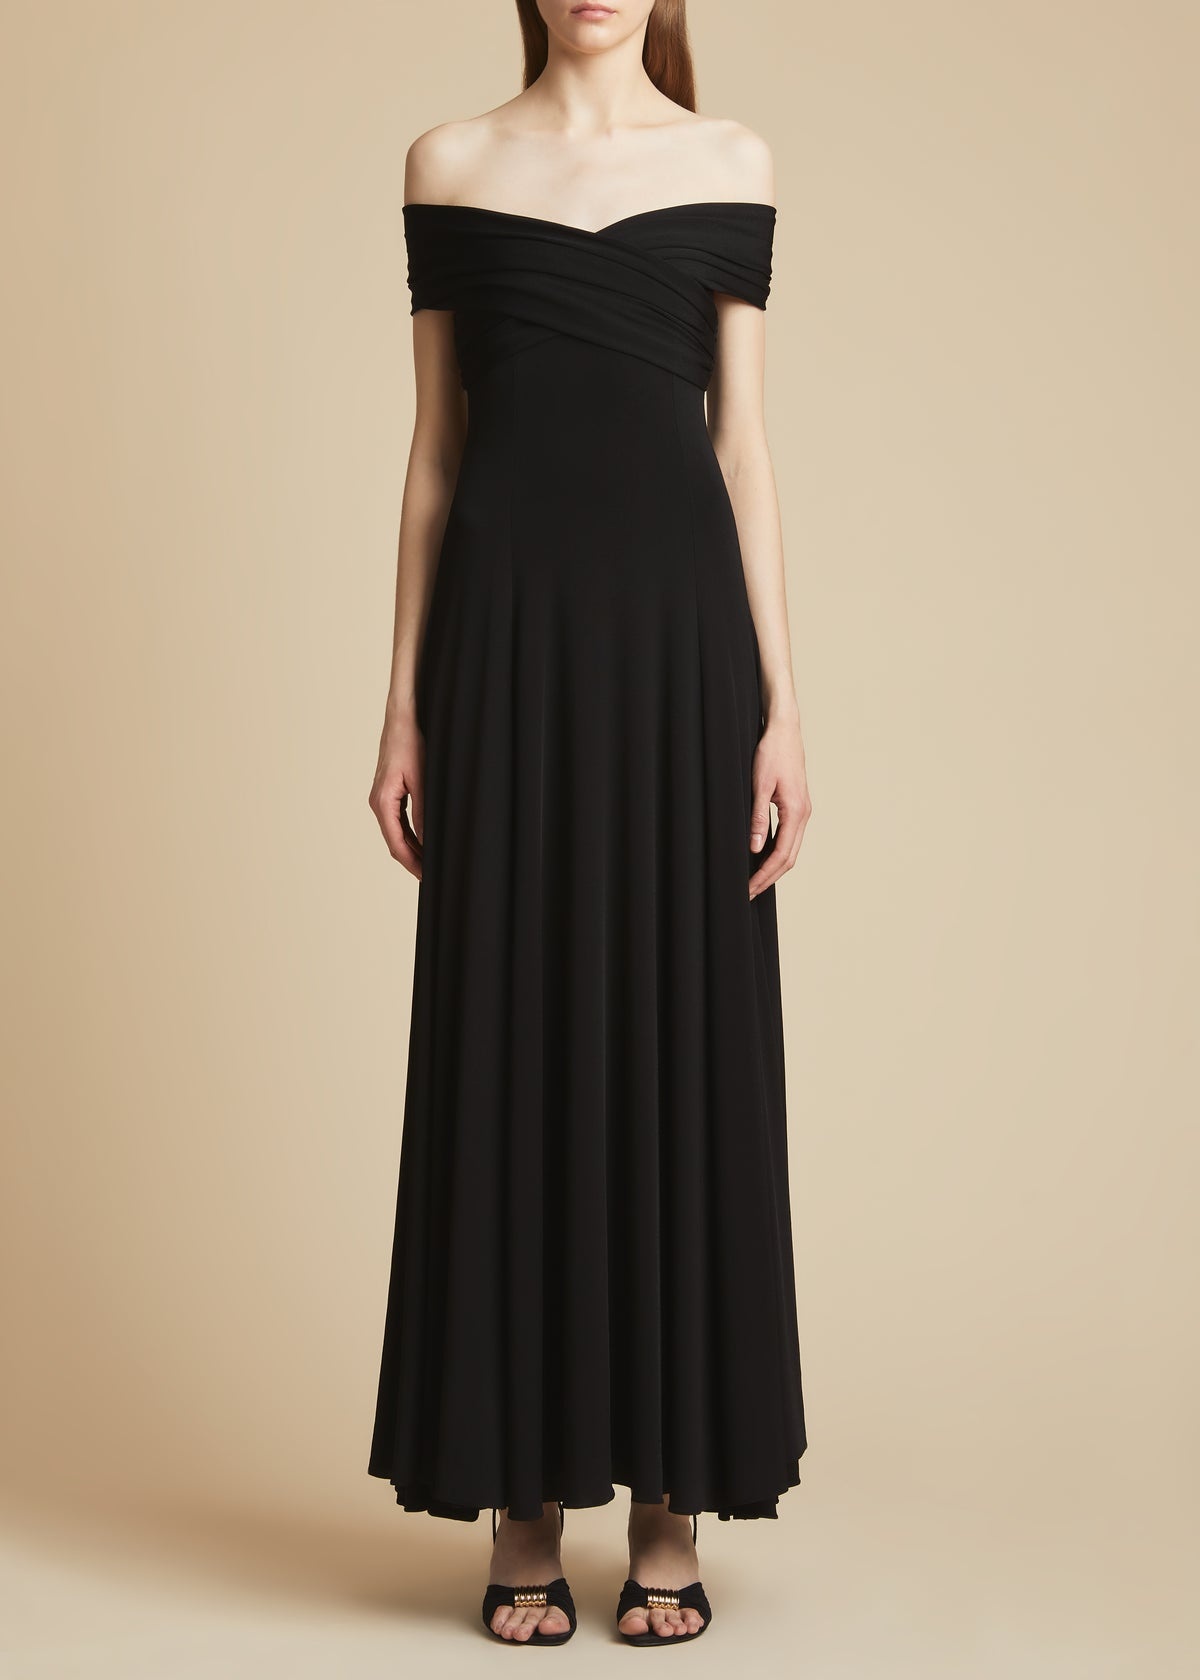 The Bruna Dress in Black - 2